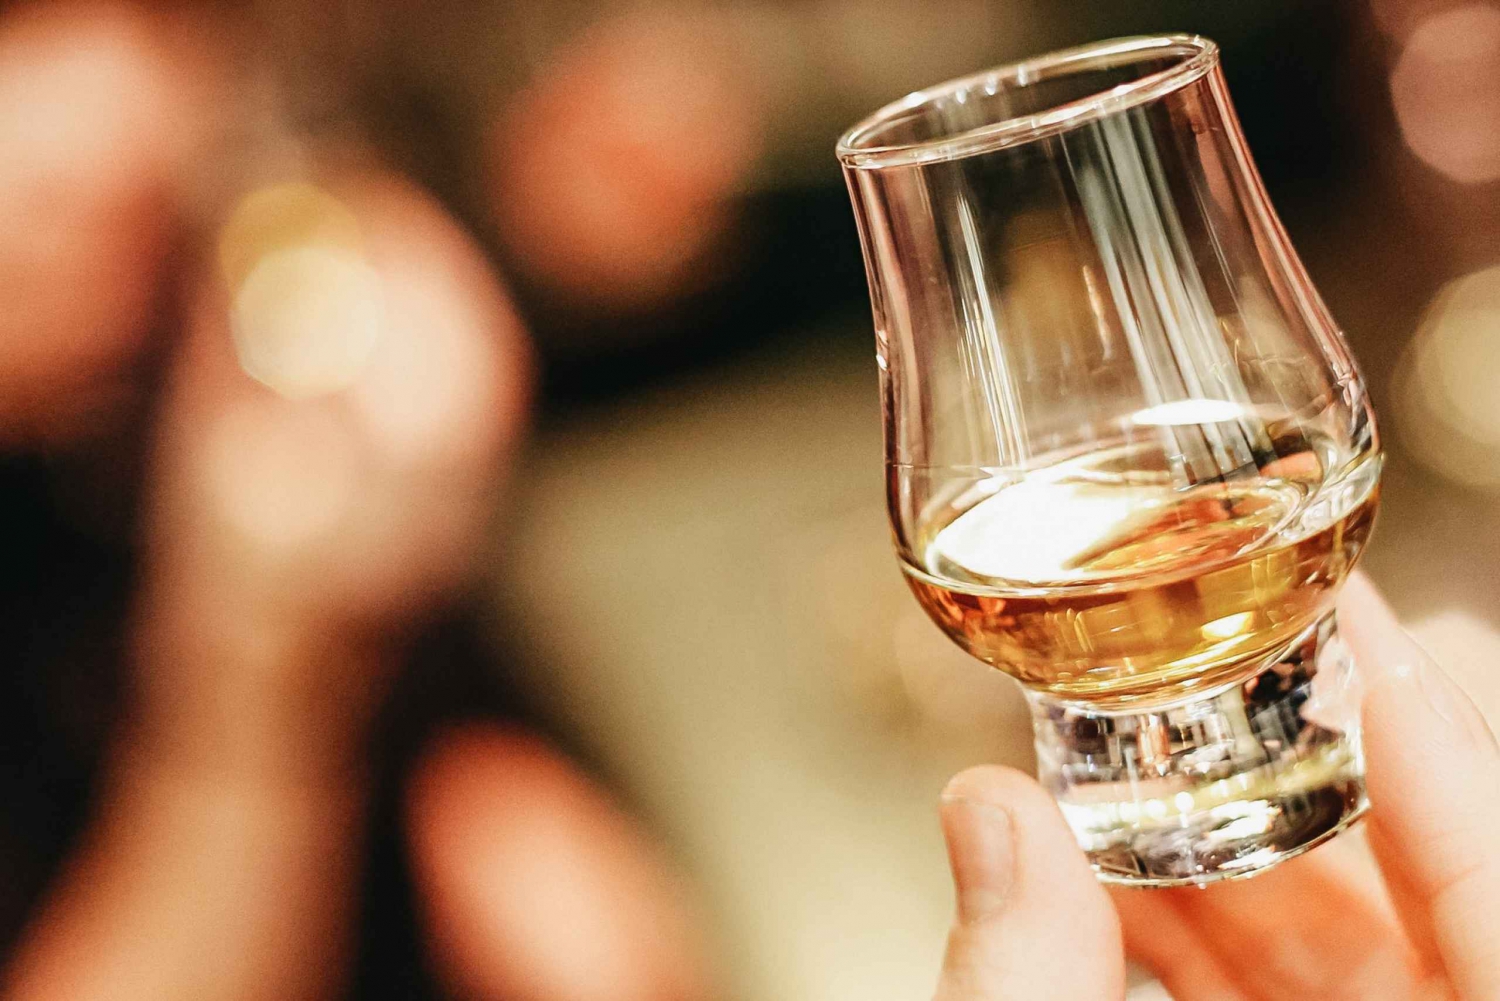 Edynburg: Degustacja whisky z historią i opowiadaniem historii